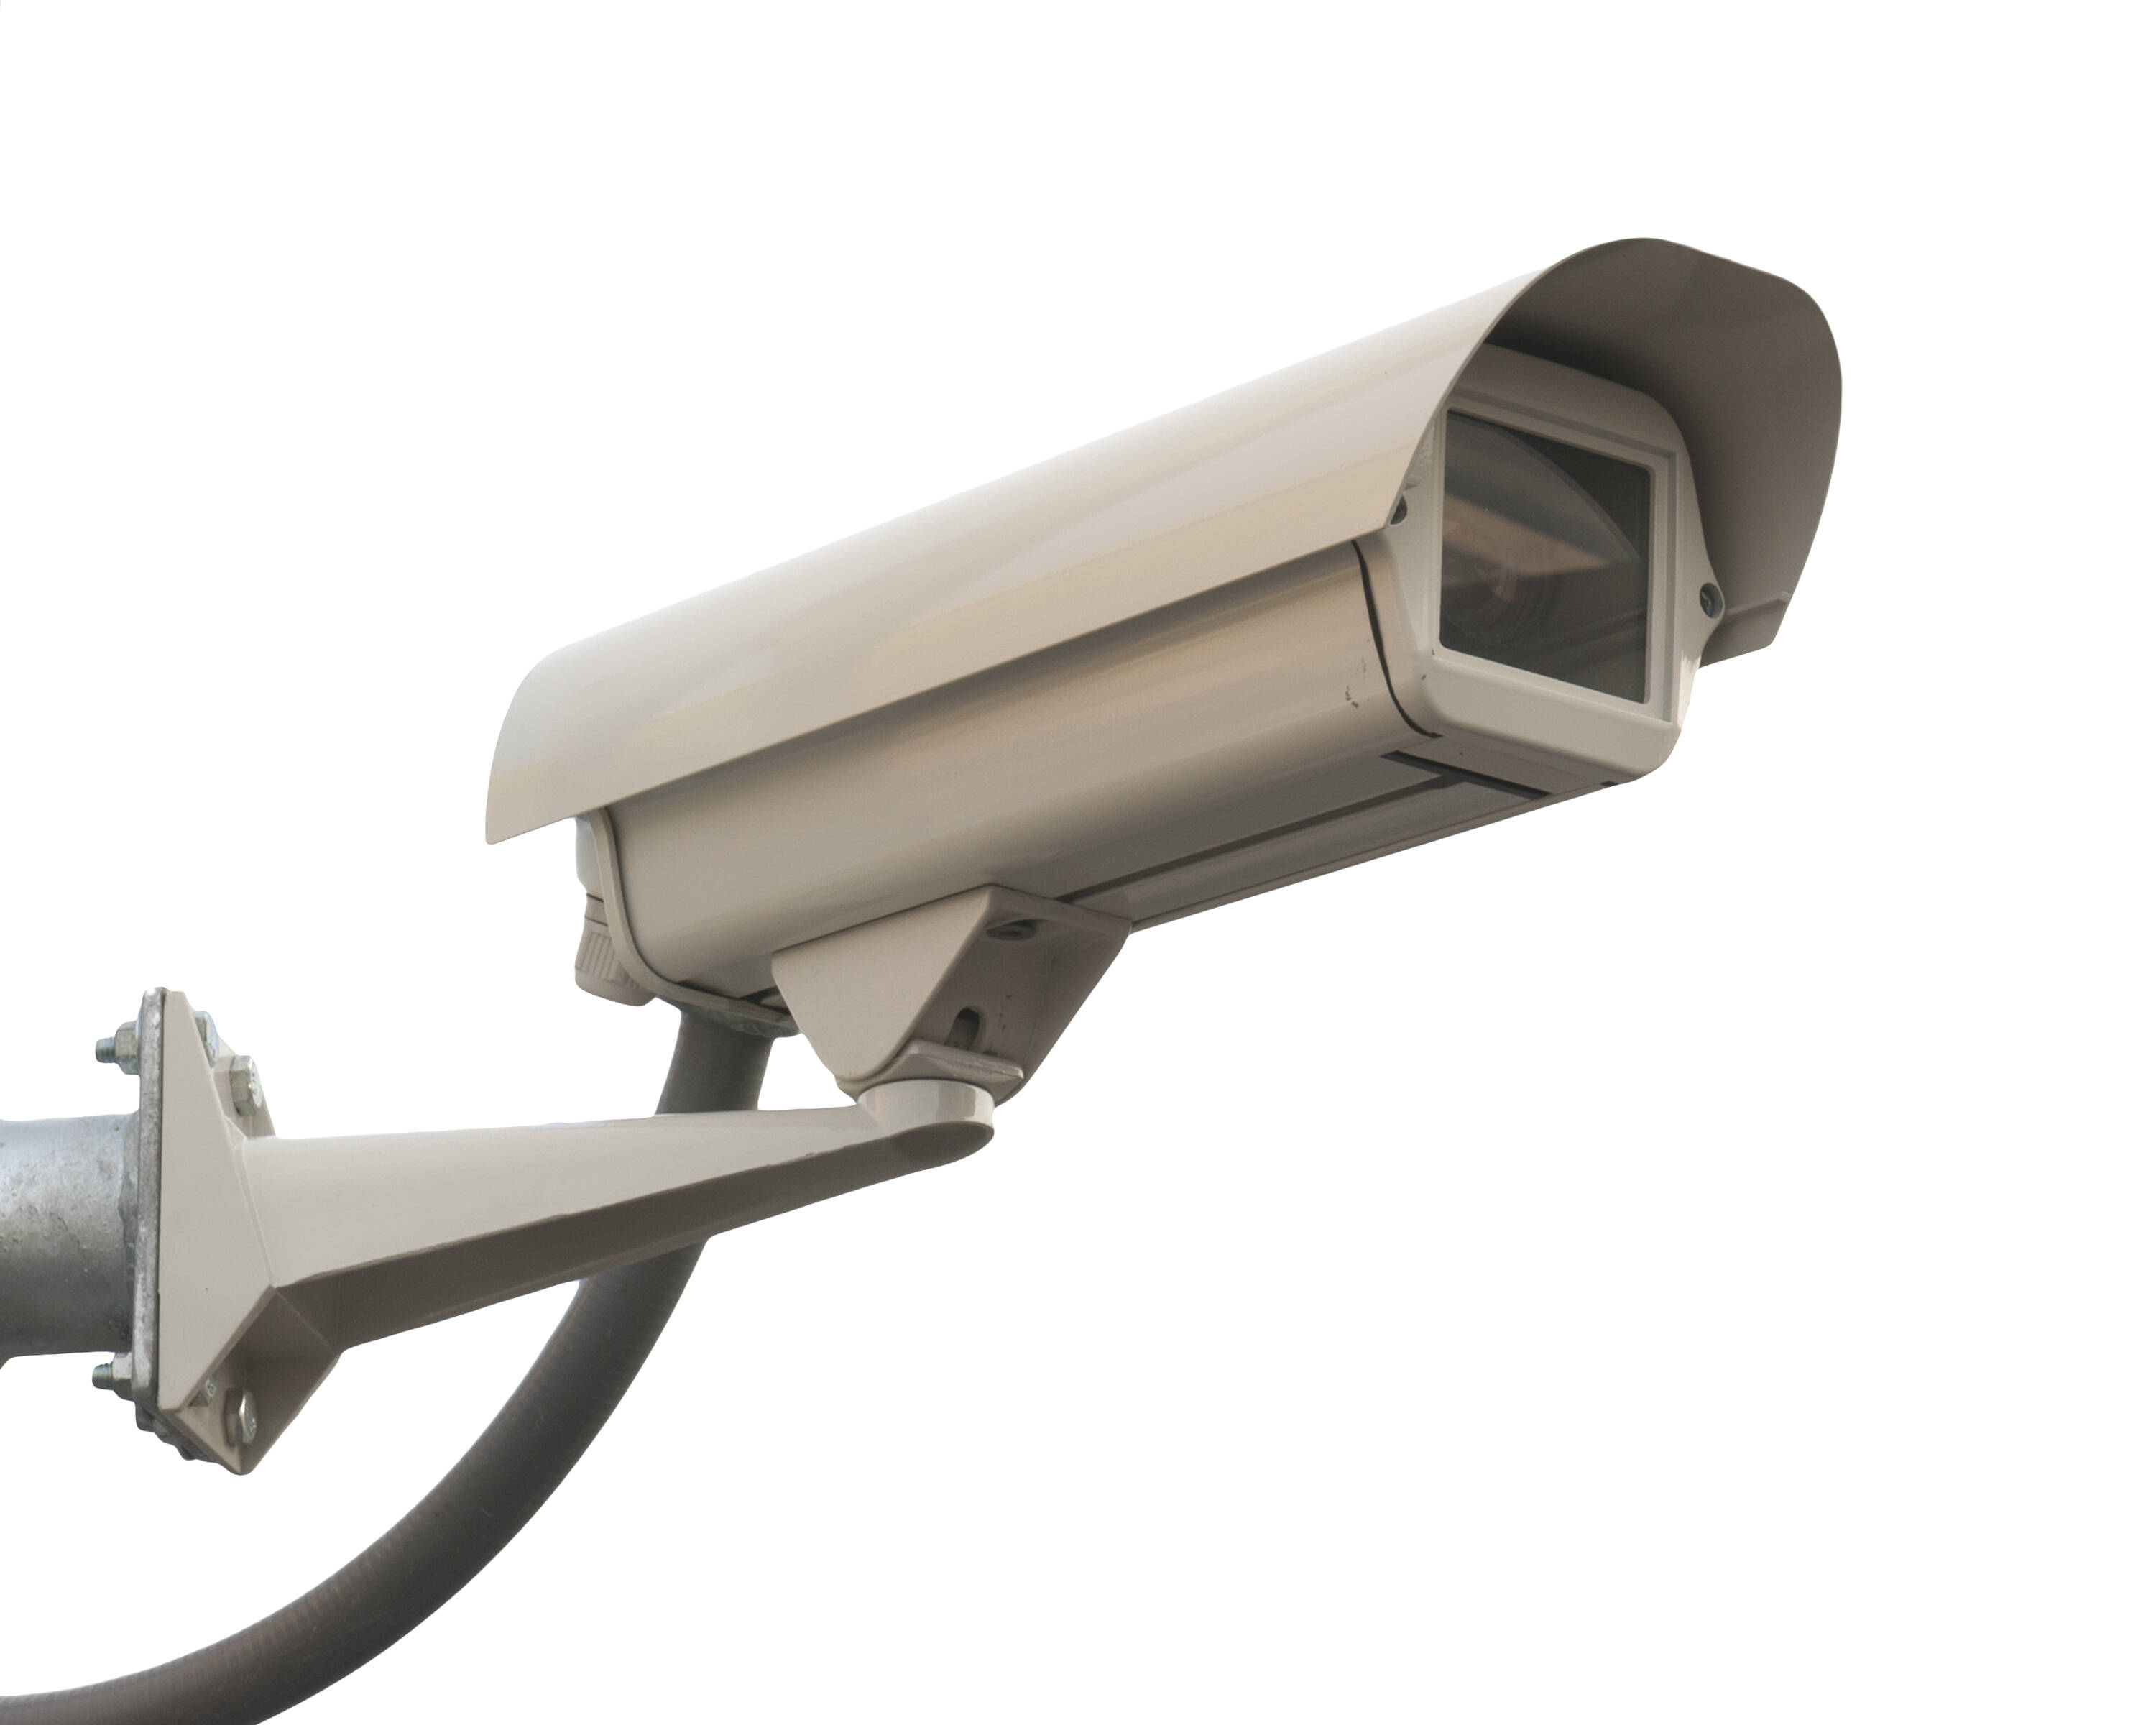 Càmeres municipals de vigilància del trànsit